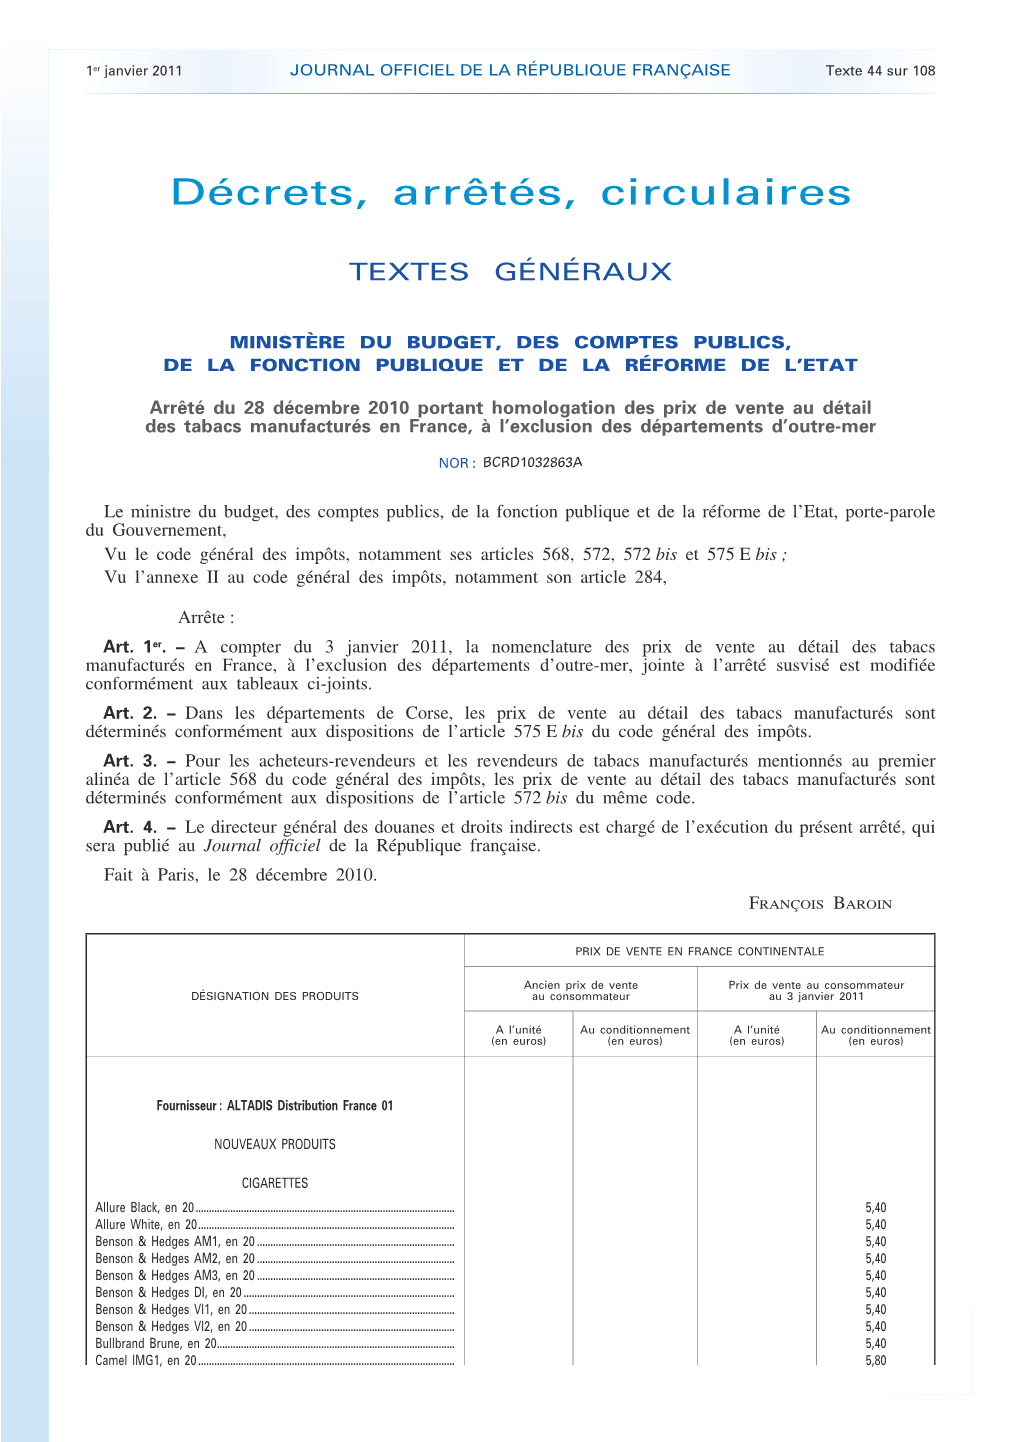 JOURNAL OFFICIEL DE LA RÉPUBLIQUE FRANÇAISE Texte 44 Sur 108